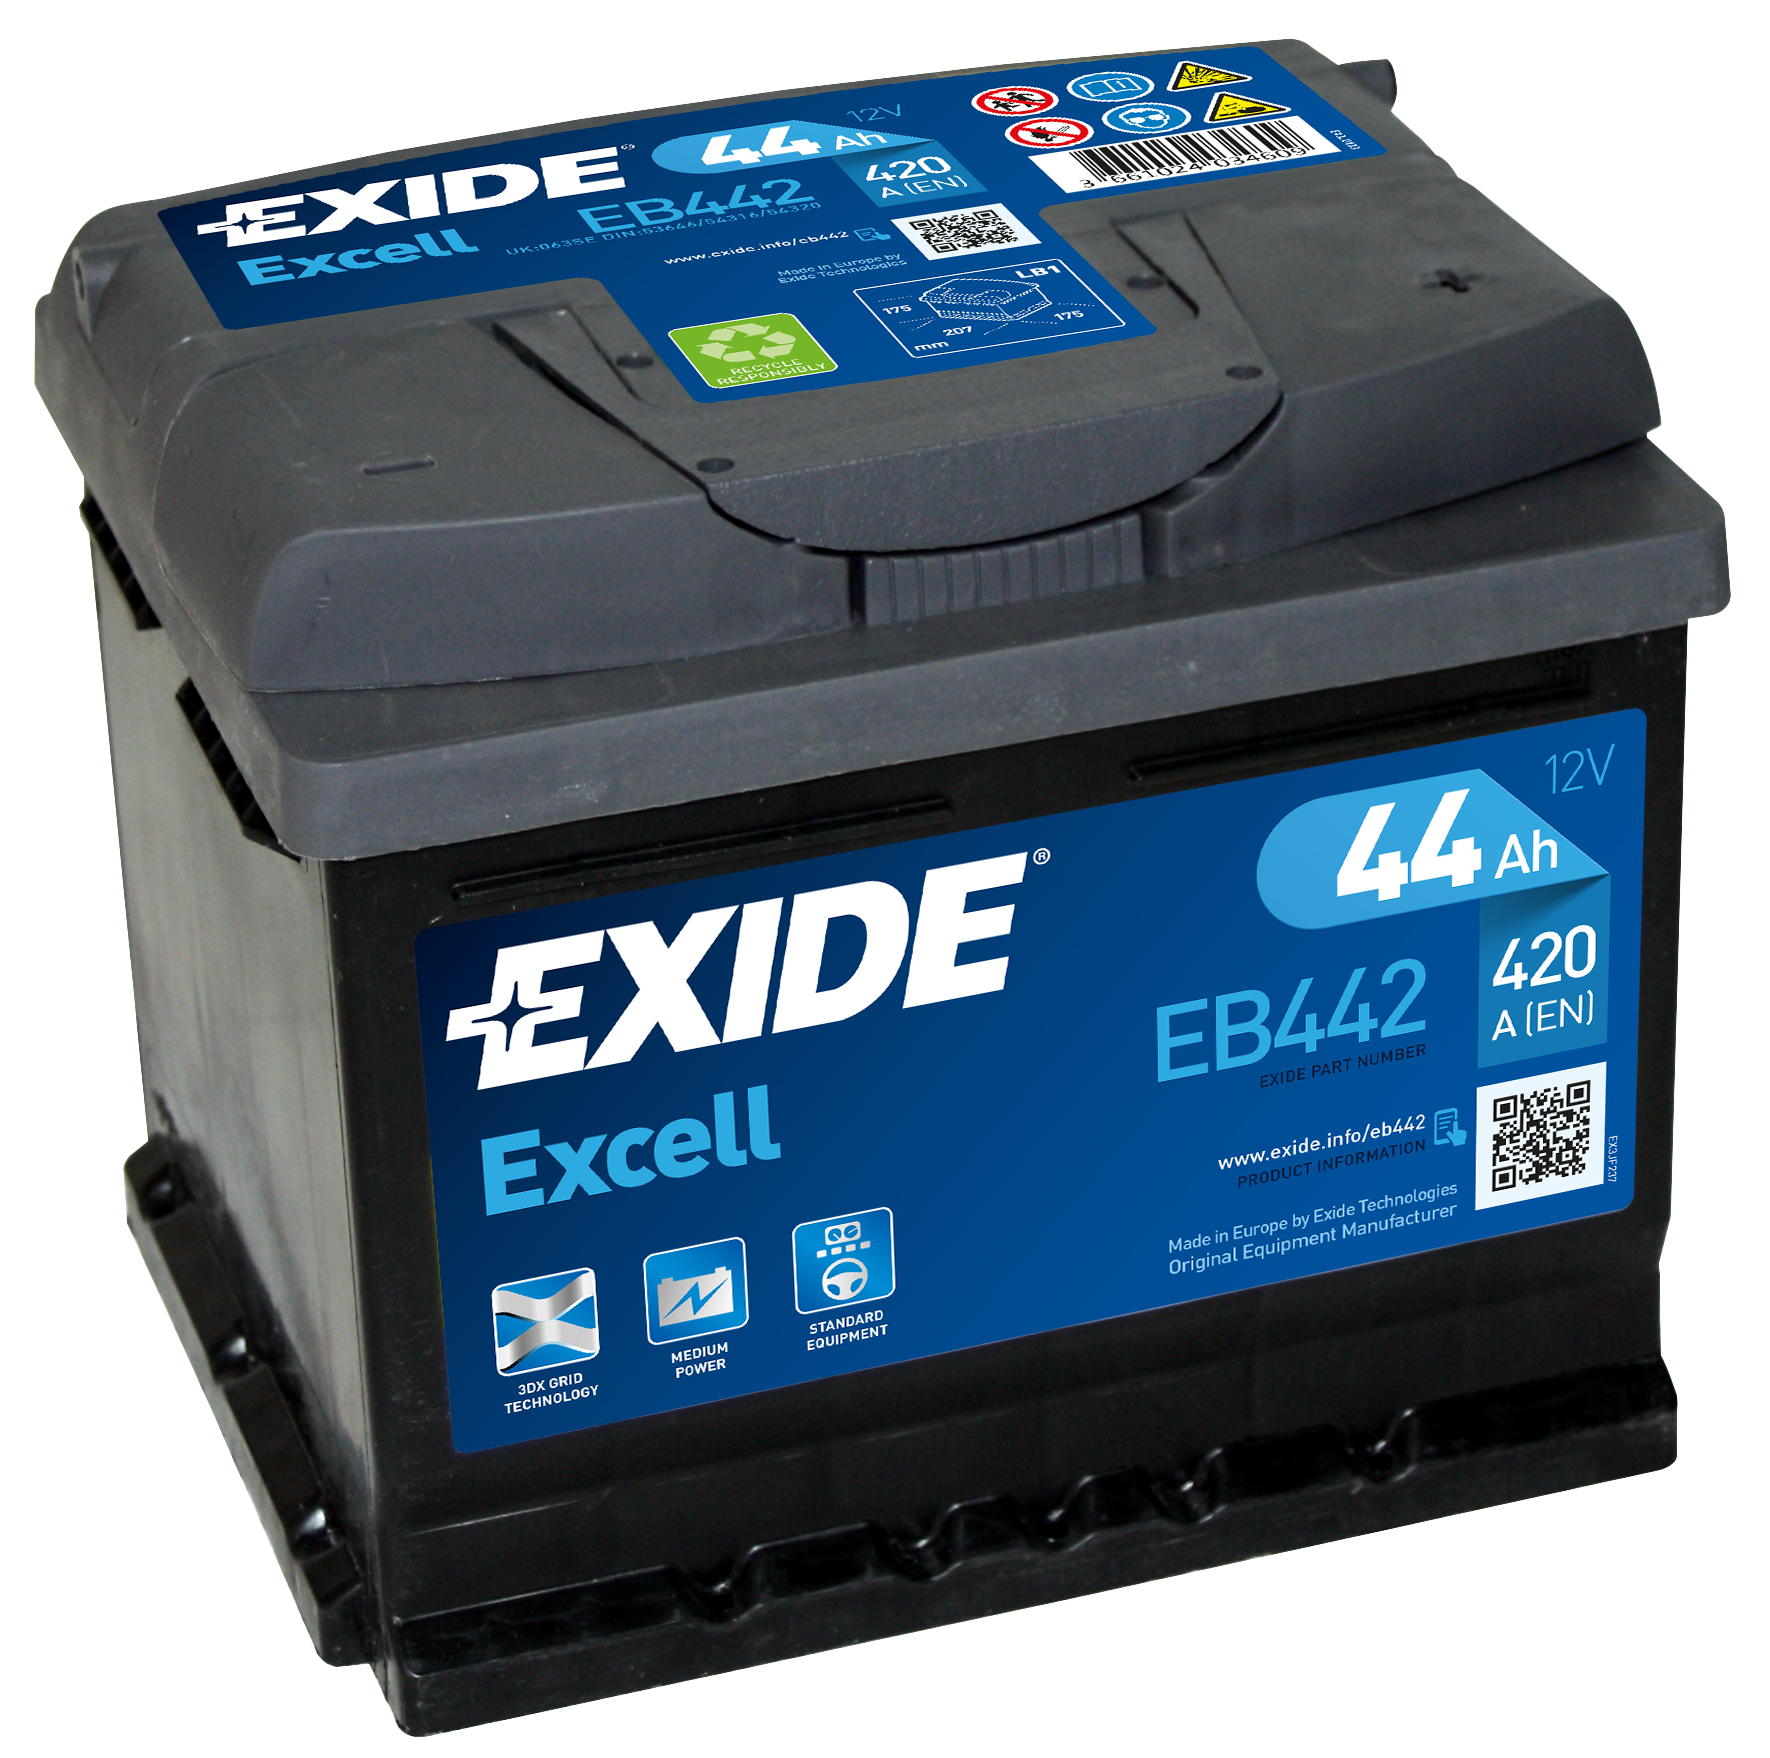 Купить запчасть EXIDE - EB442 44/Ч Excell EB442